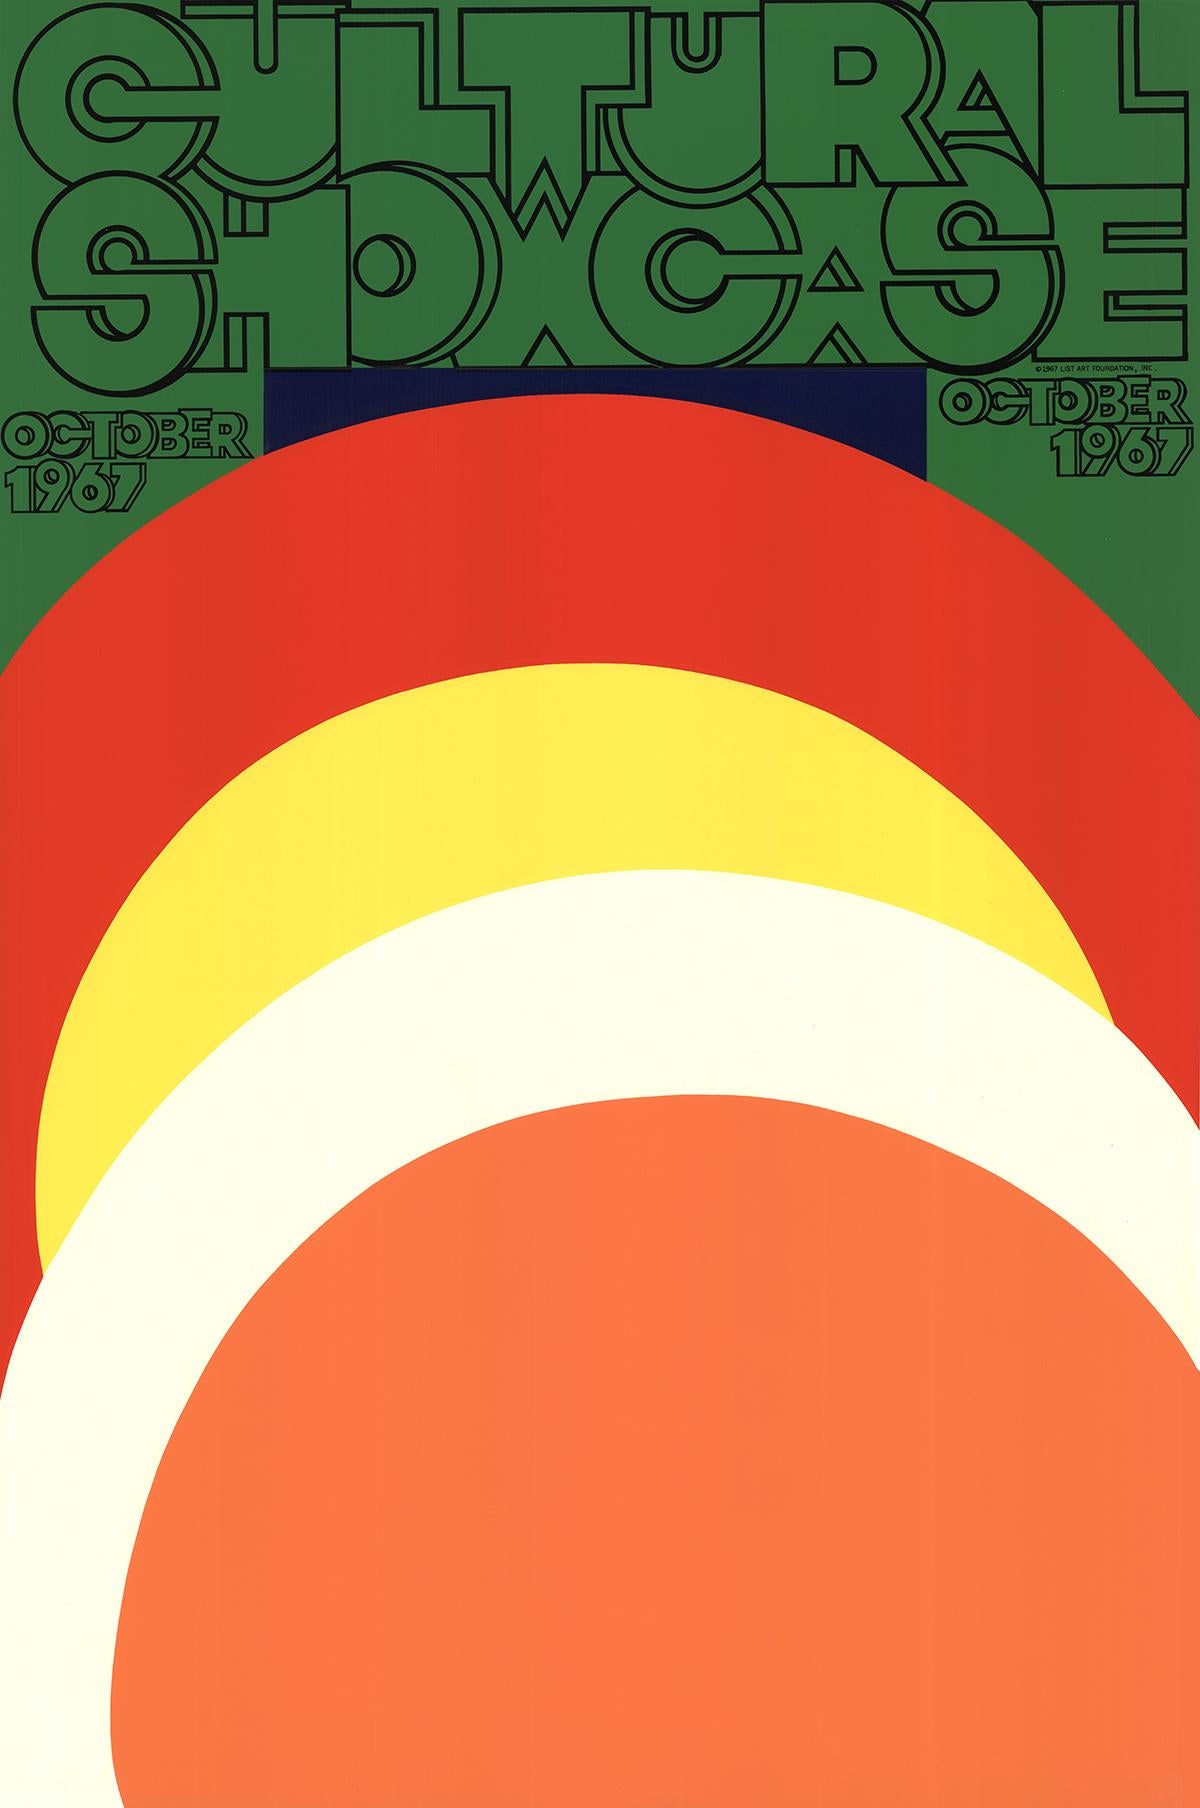 Affiche d'exposition de Caroil Summers publiée par LIST ART en 1967 pour le Cultural Showcase. La sérigraphie présente des plis sur toute sa surface. Estampillé à l'aveugle dans le coin inférieur gauche 'Chiron Press New York'.
